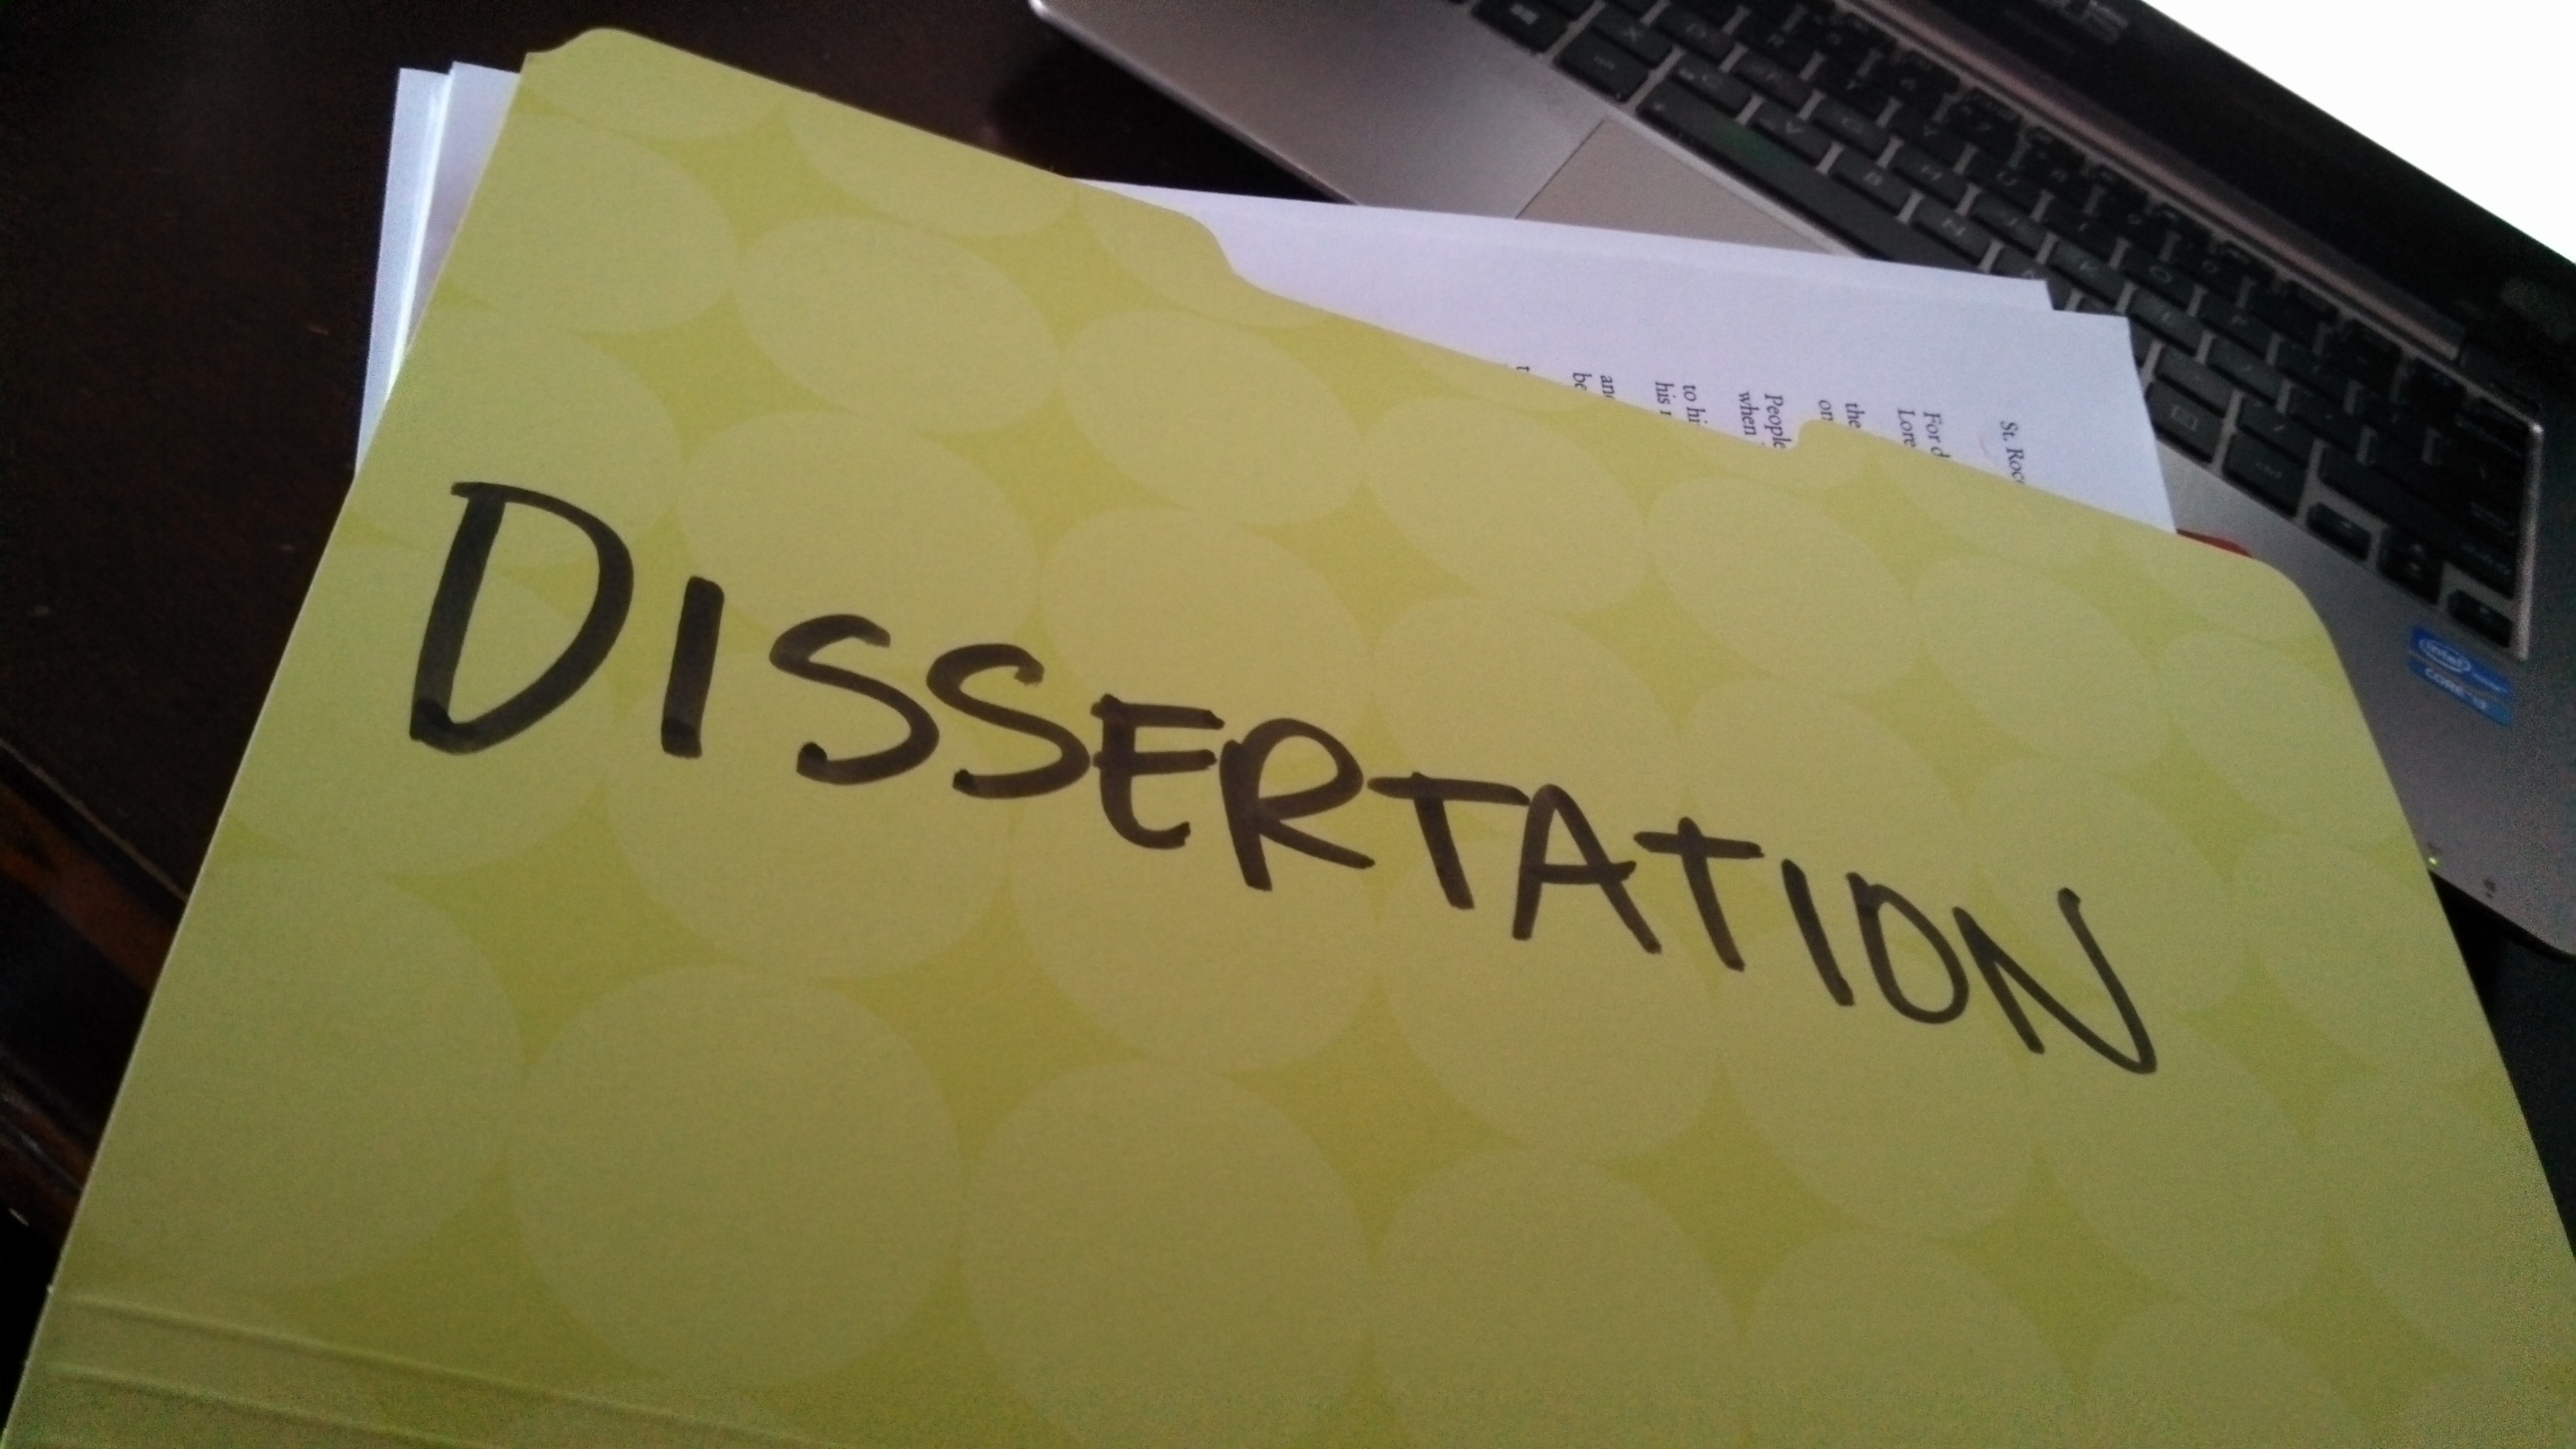 Dissertation writing course description